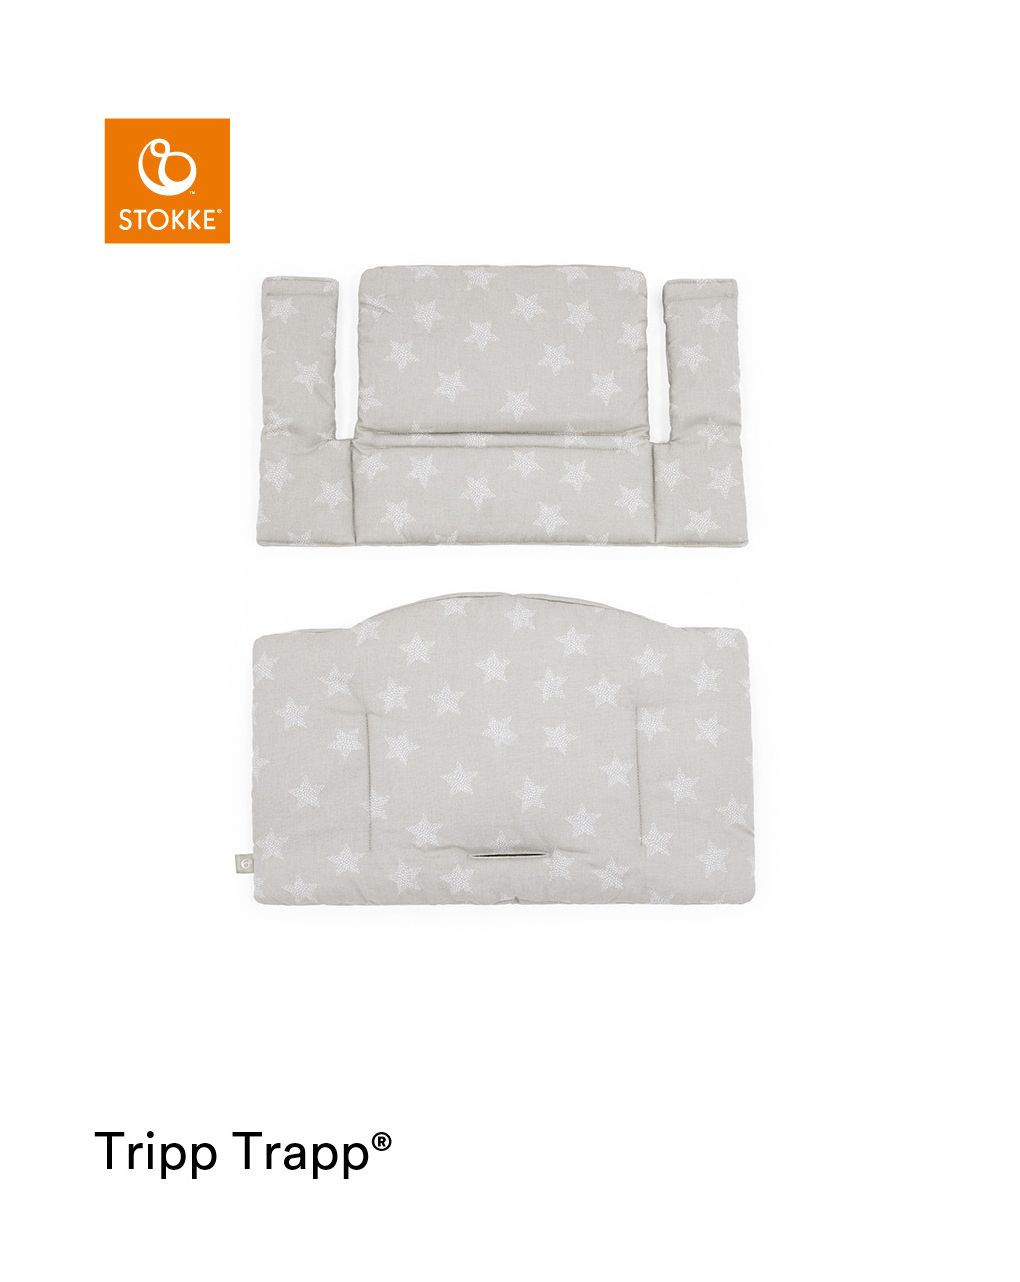 Tripp trapp® classic cushion stars silver ocs
cuscino per seggiolone, morbido e avvolgente per il tuo bambino